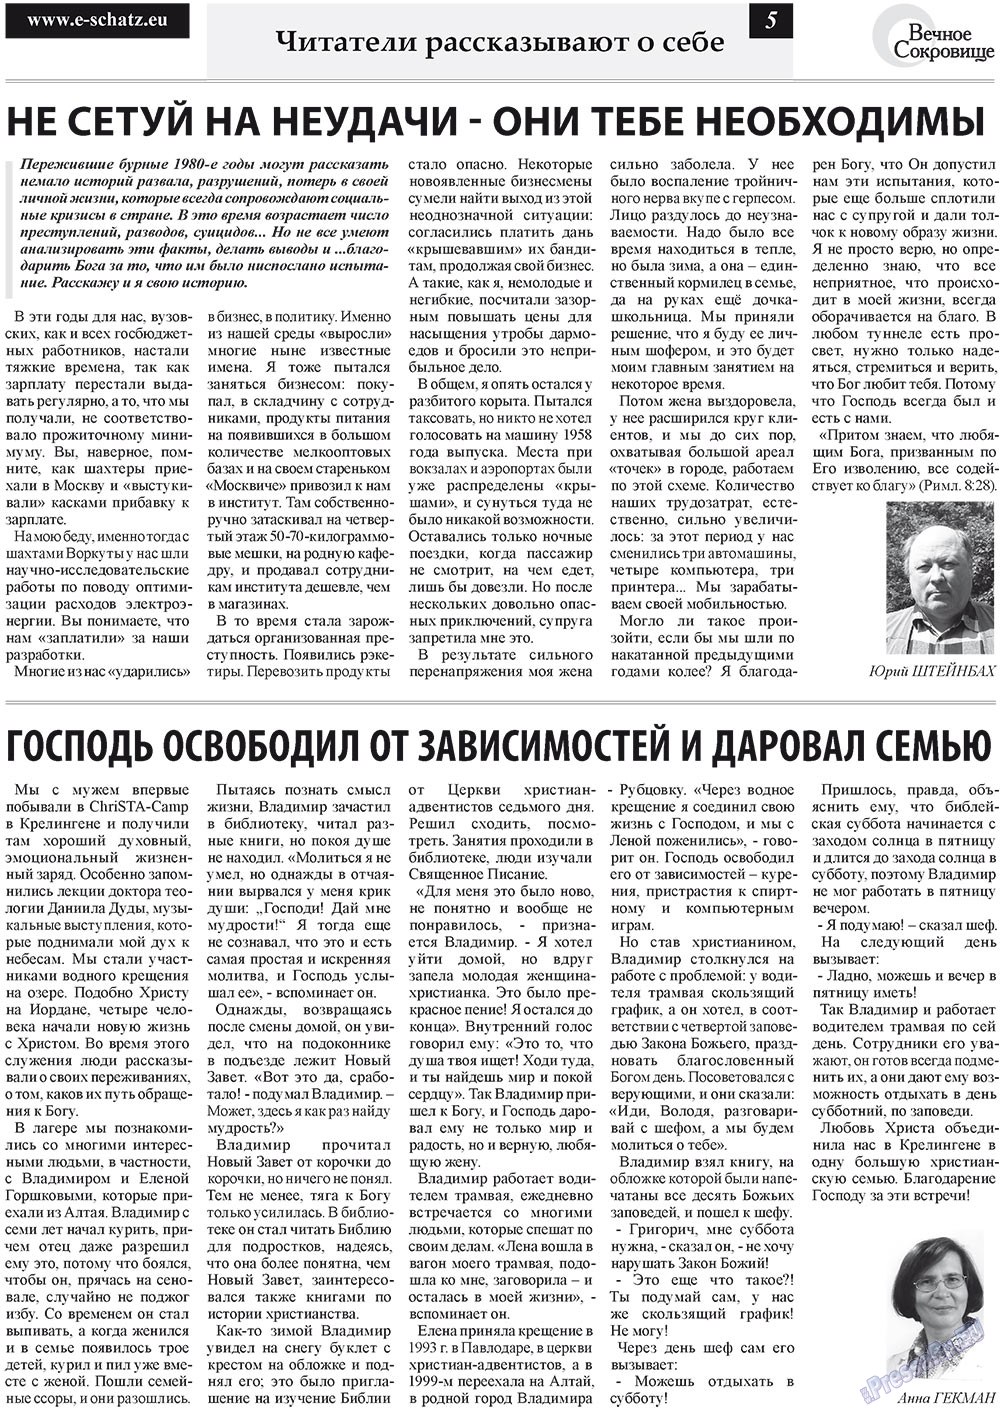 Вечное сокровище (газета). 2011 год, номер 4, стр. 5